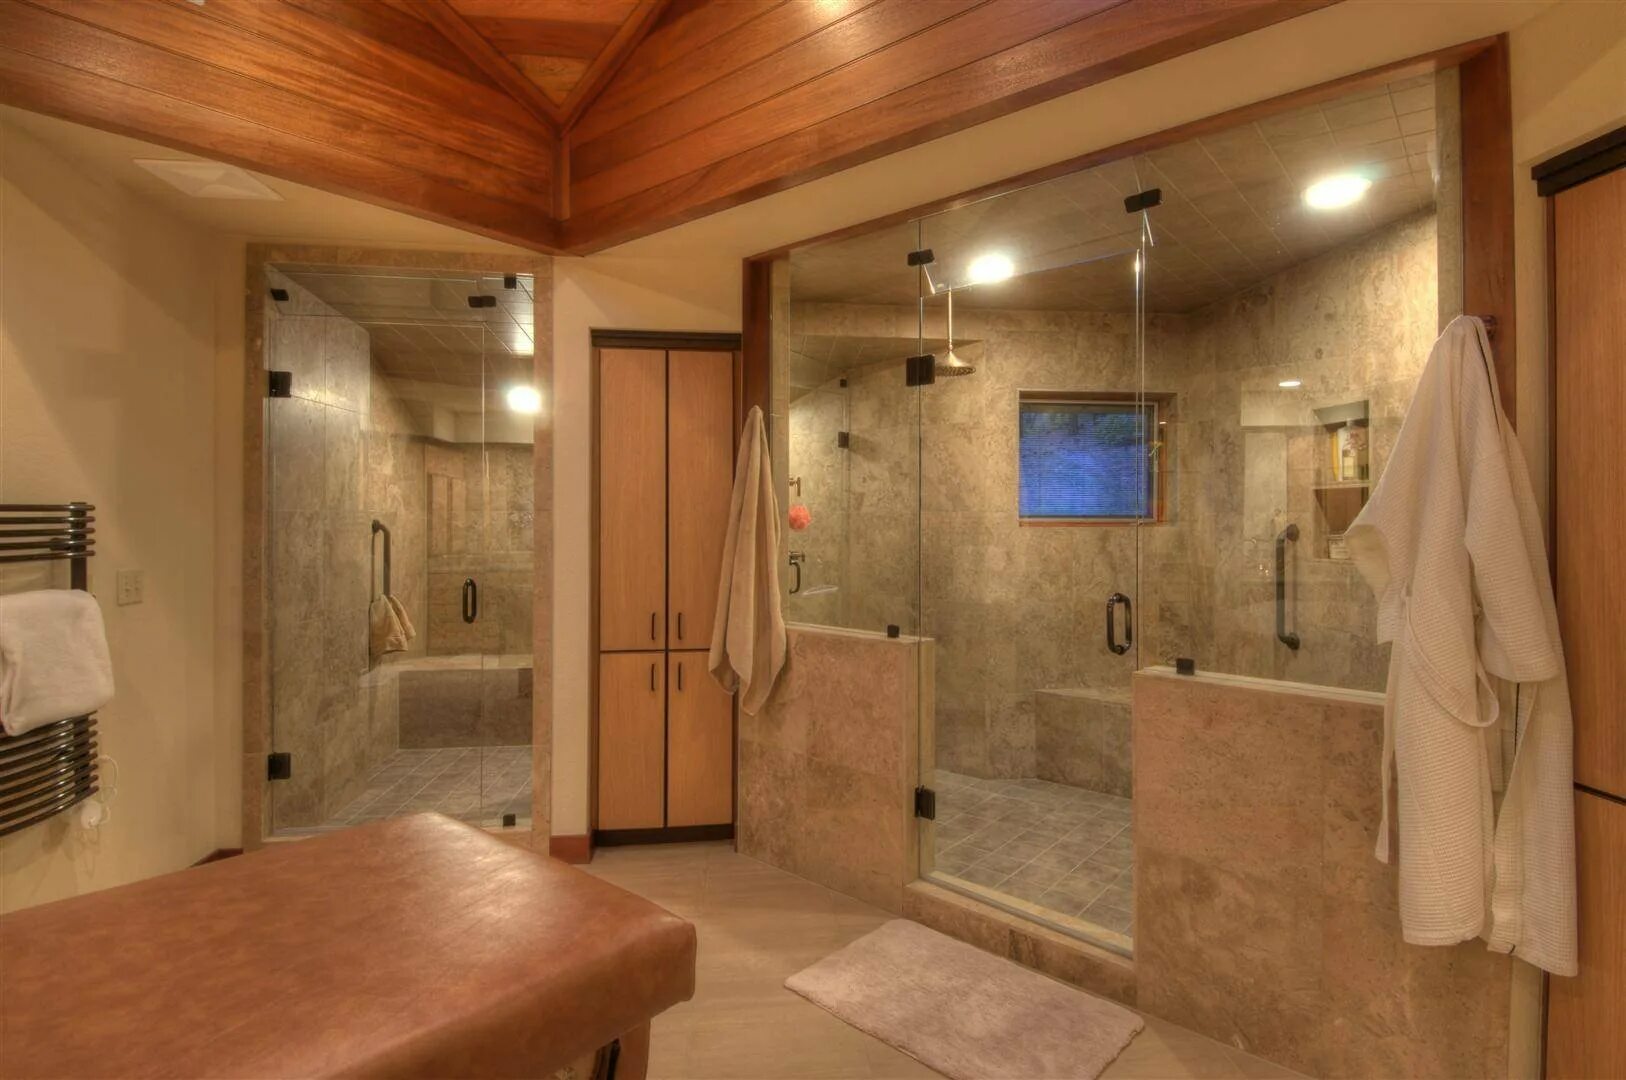 Ванная комната с сауной. Ванная комната с сауной и душем. Душевая комната с сауной.